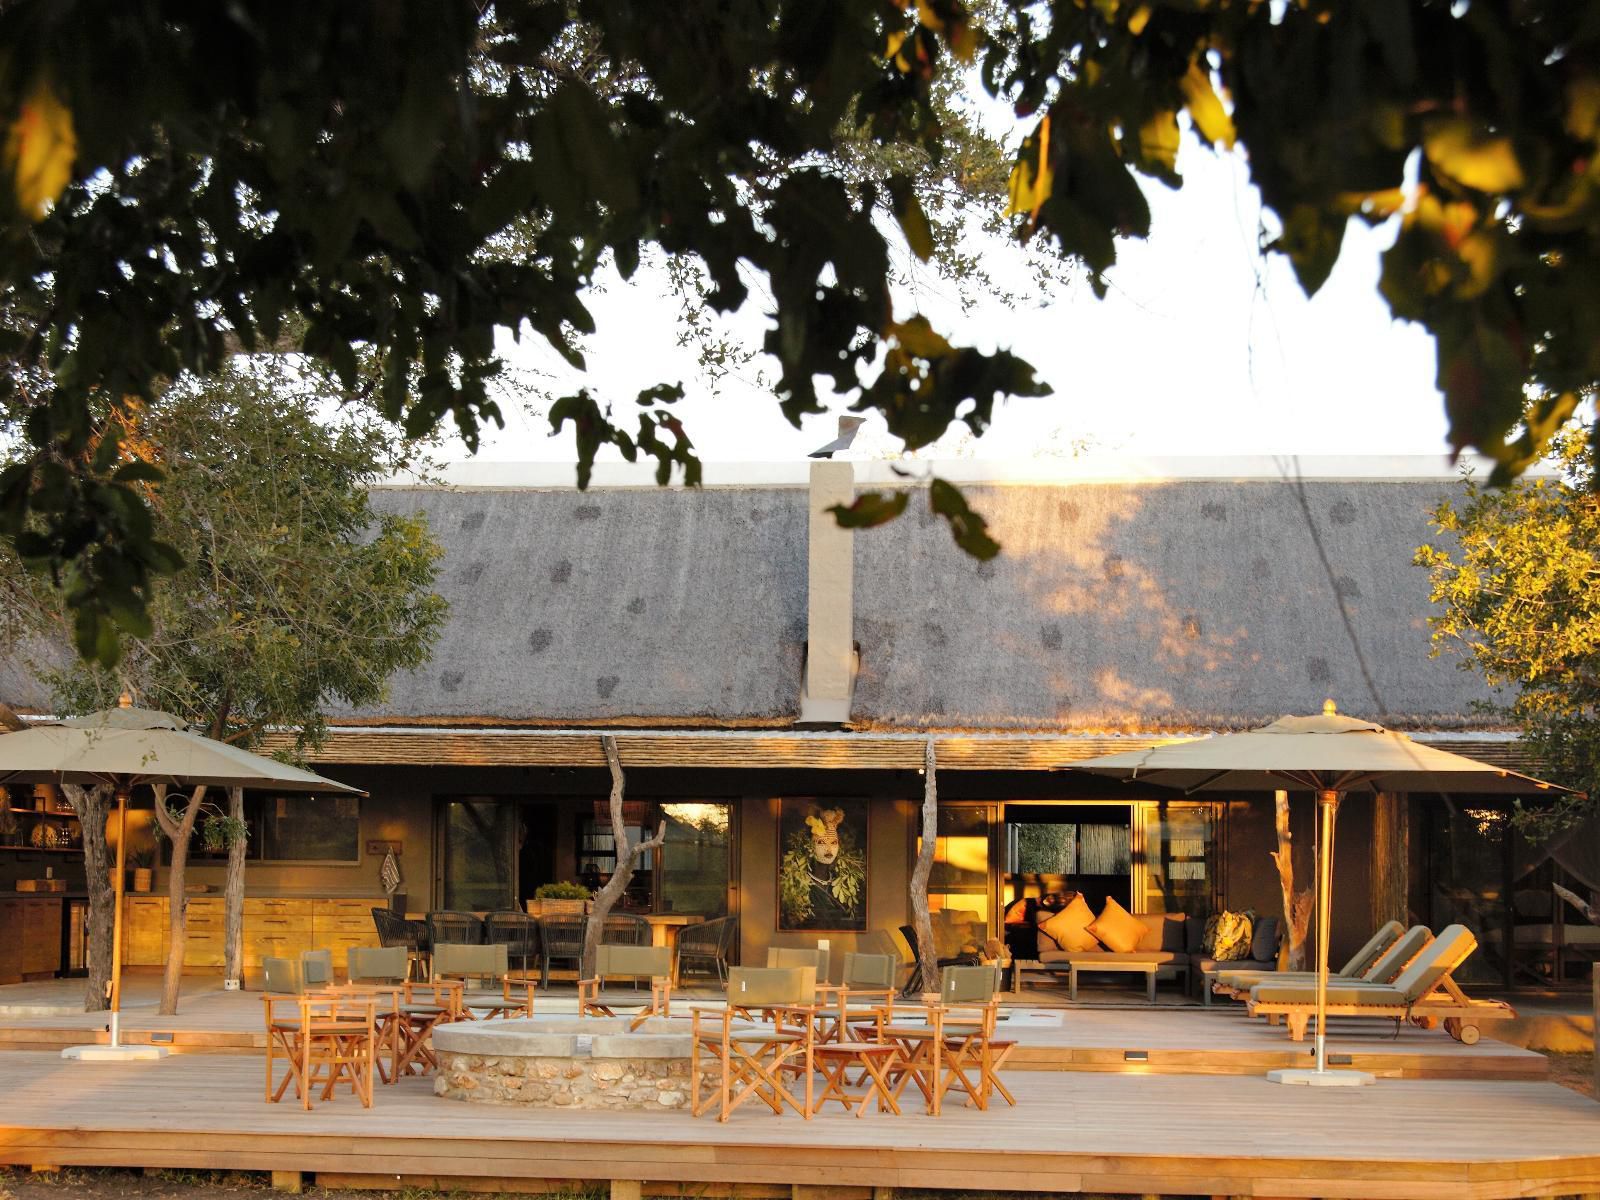 Tulela Safari Lodge Klaserie Private Nature Reserve Mpumalanga South Africa 